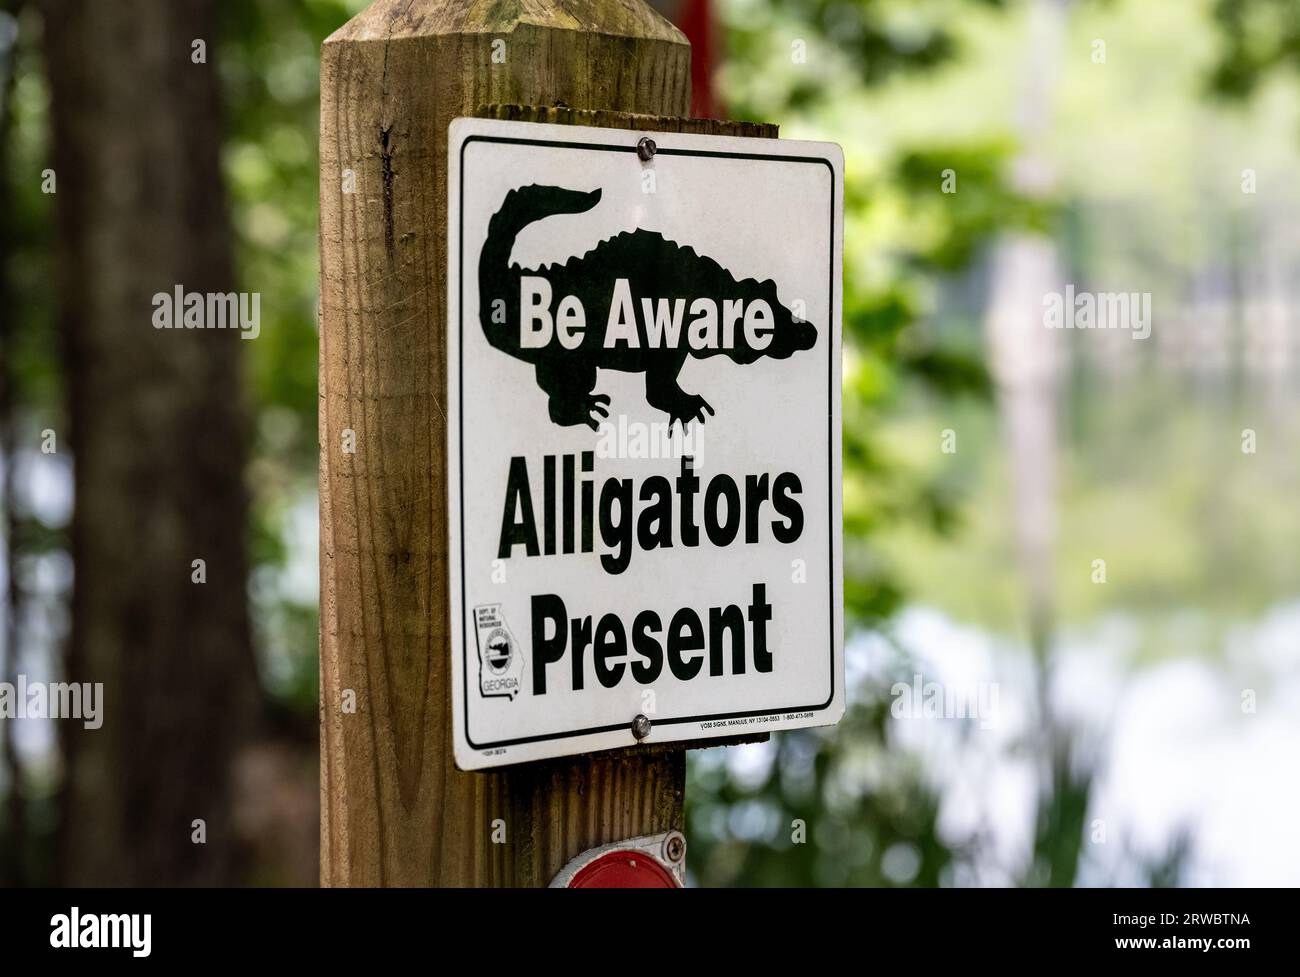 Panneau de sensibilisation aux alligators au parc national George L. Smith II, populaire pour ses sentiers de kayak de forêt de cyprès submergés, à Twin City, Géorgie. (ÉTATS-UNIS) Banque D'Images